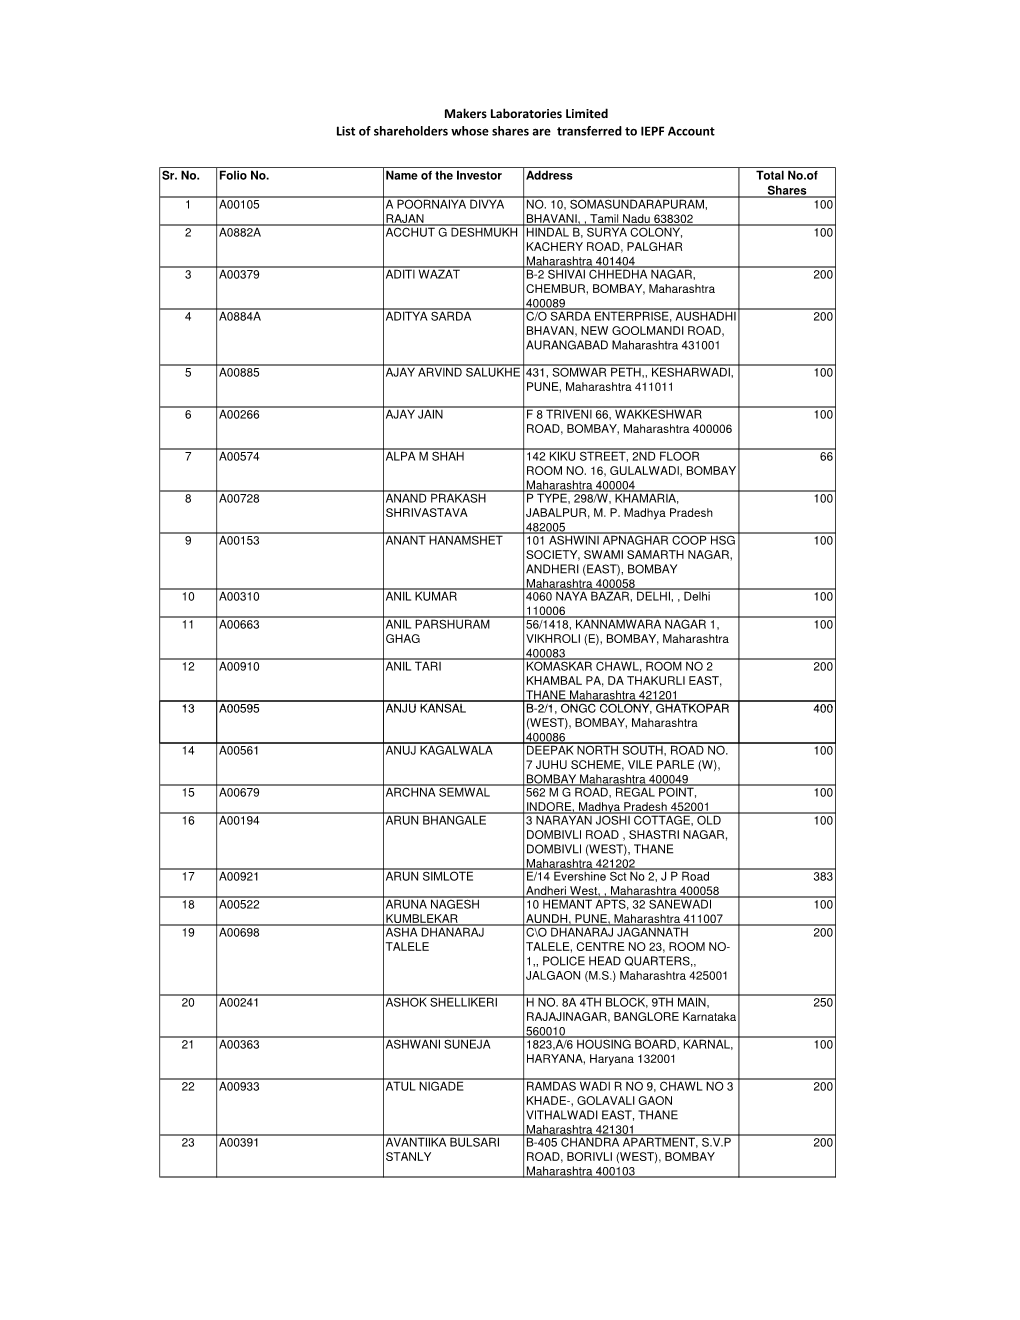 List of Shareholders for IEPF